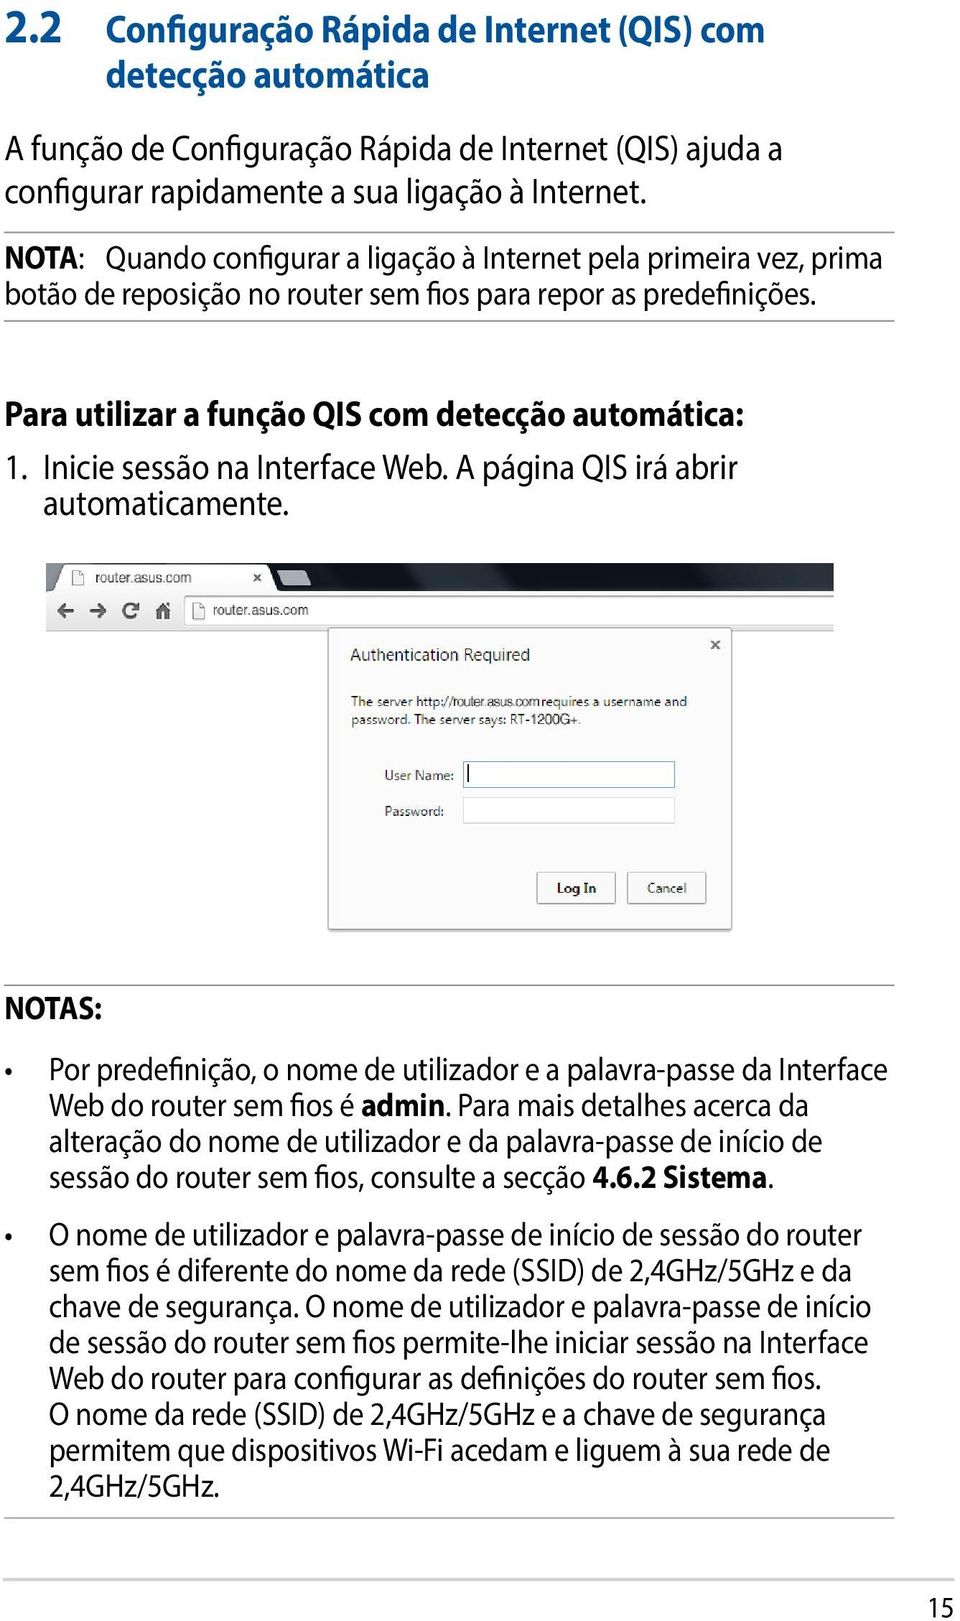 Inicie sessão na Interface Web. A página QIS irá abrir automaticamente. NOTAS: Por predefinição, o nome de utilizador e a palavra-passe da Interface Web do router sem fios é admin.